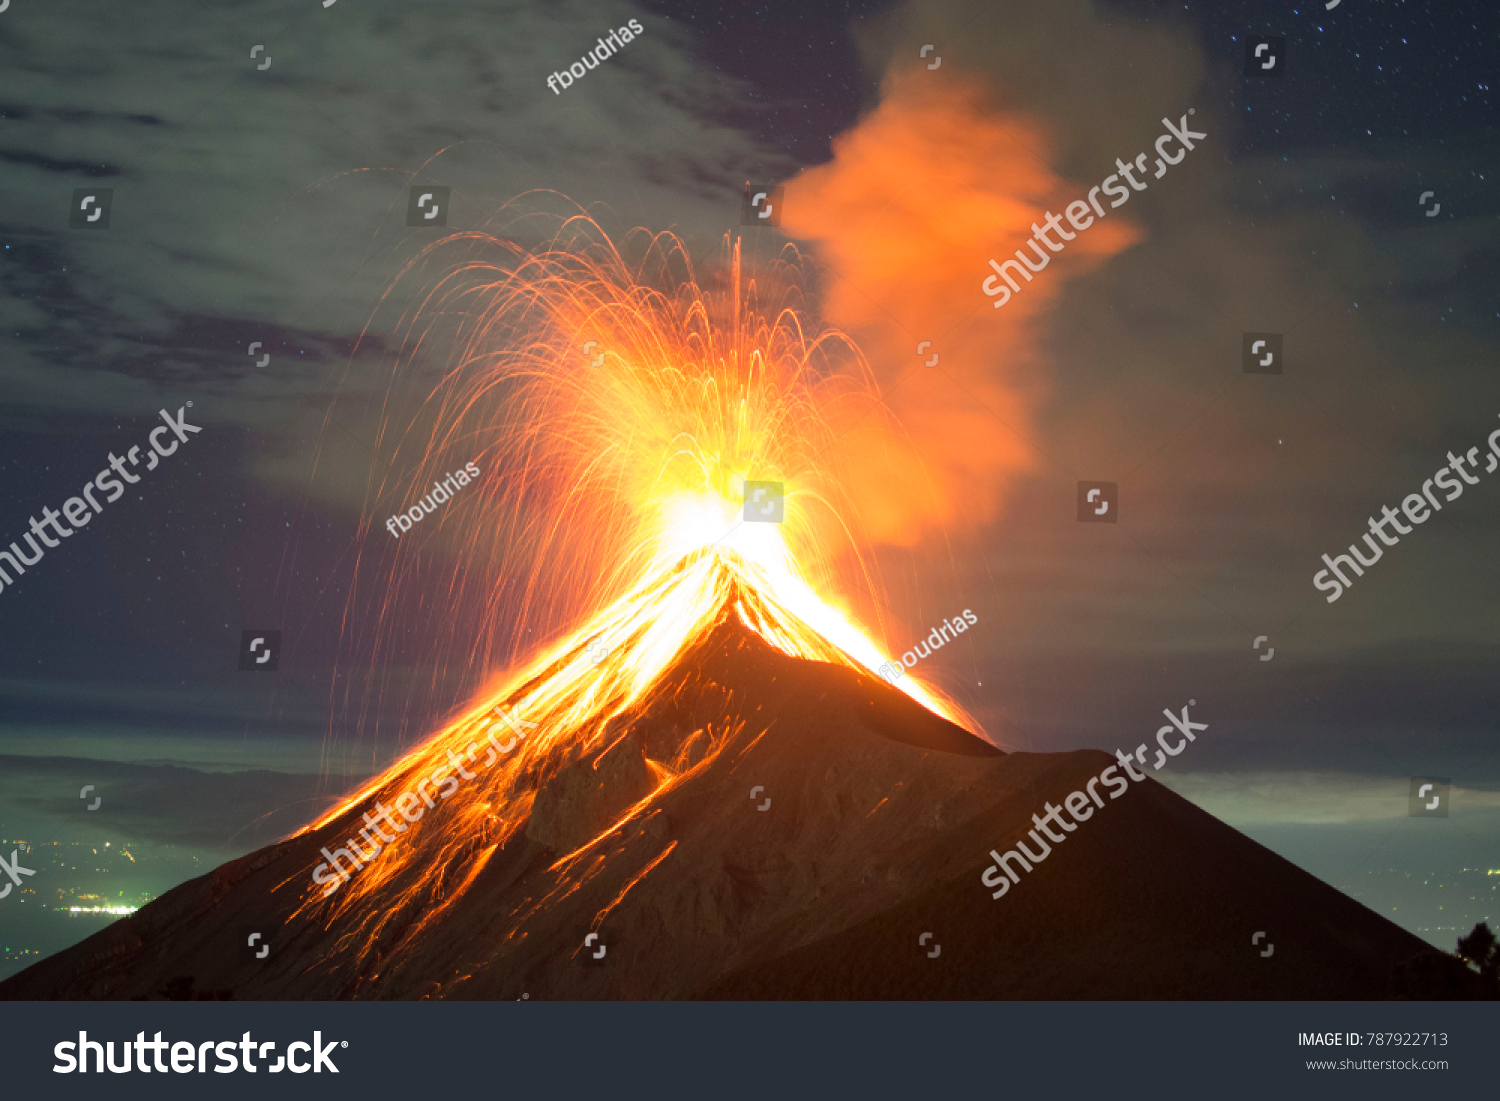 夜の火山噴火 グアテマラ アンティグアのフエゴ火山 の写真素材 今すぐ編集